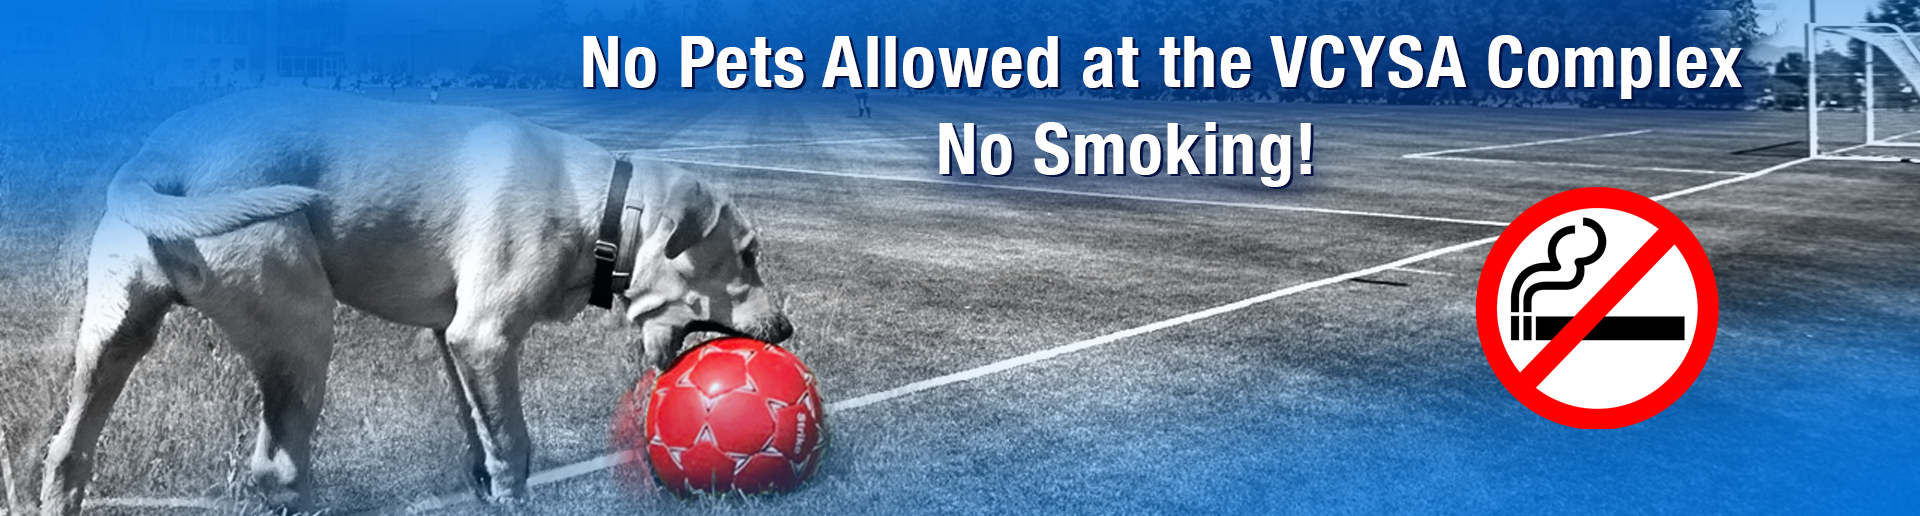 No Pets Allowed - No Smoking!